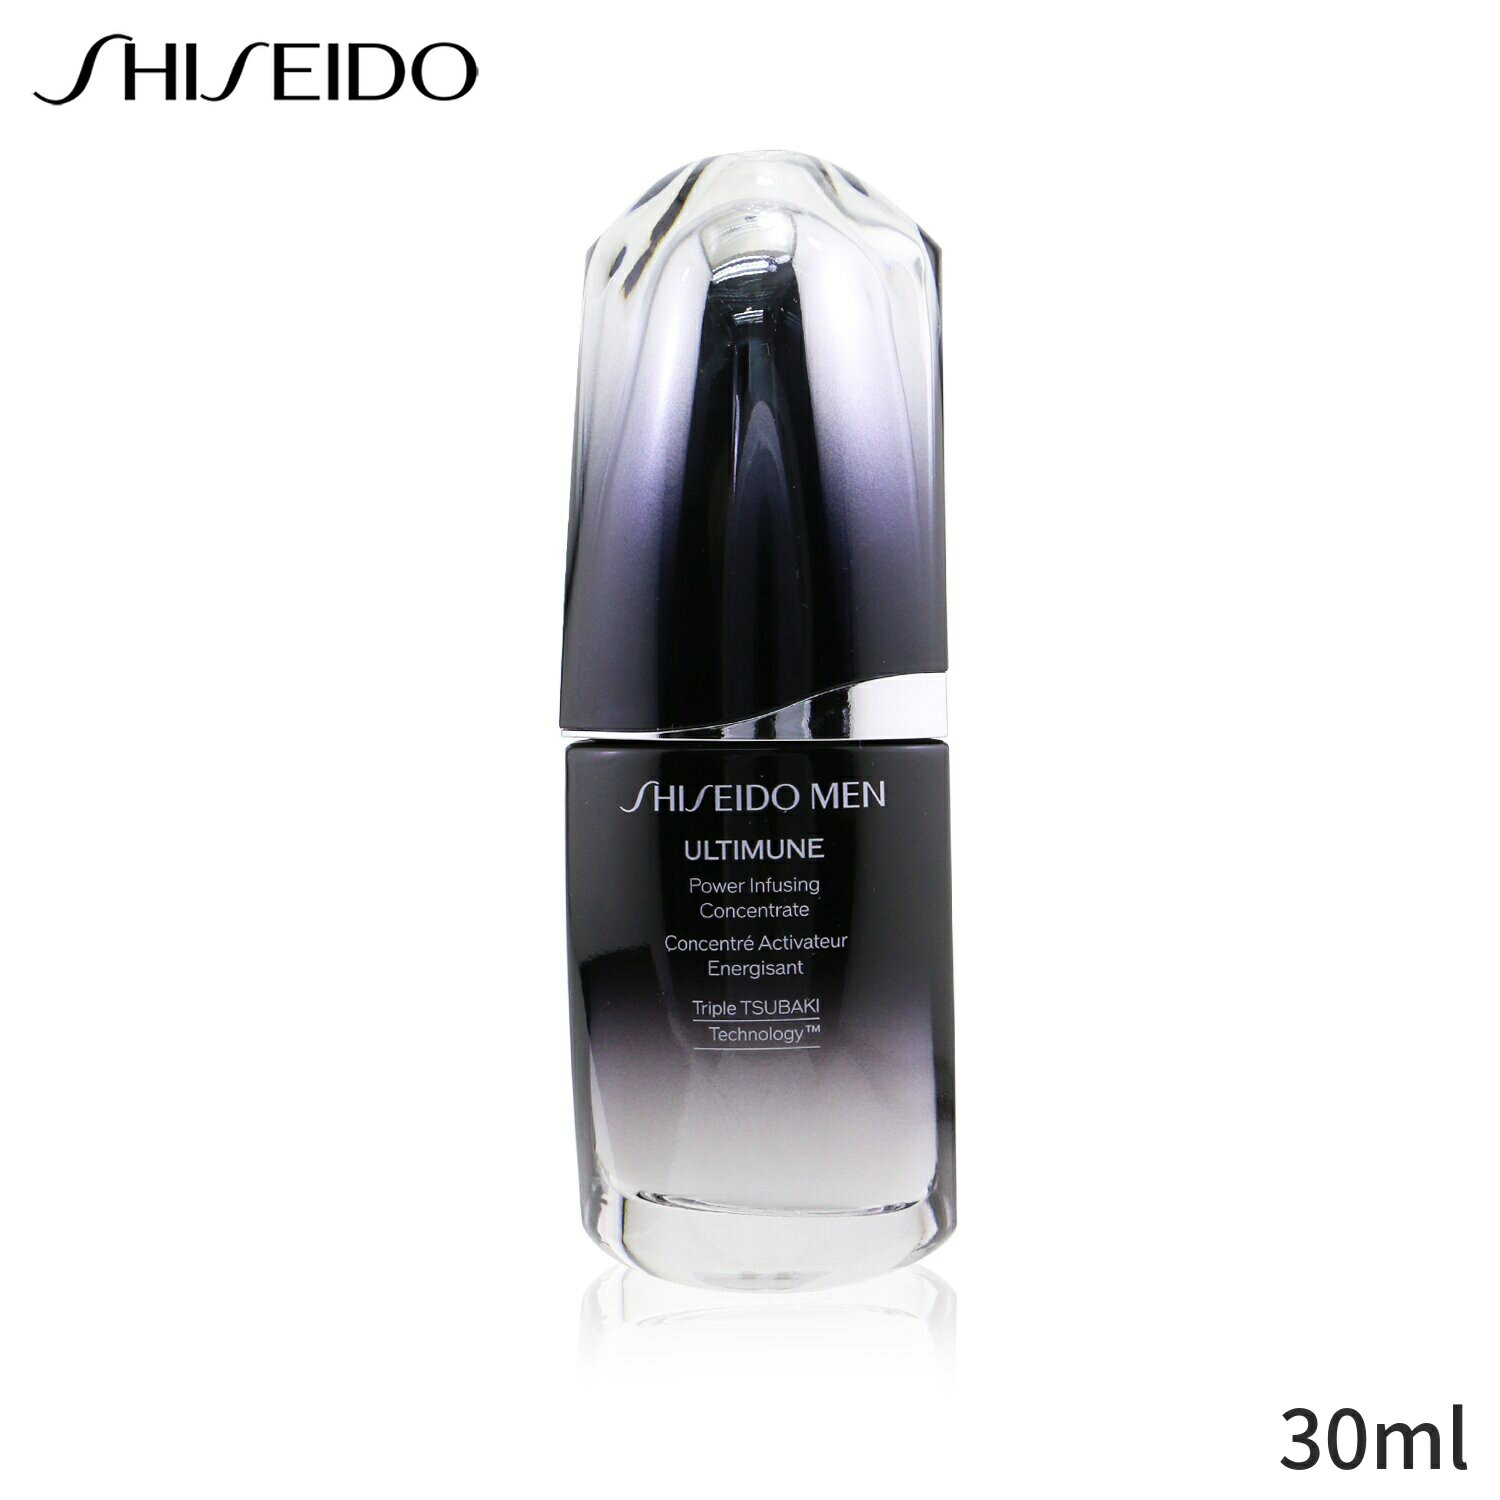 資生堂 美容液 Shiseido メンズ アルティミューン パワーインフュージング コンセントレート 30ml スキンケア 男性用 基礎化粧品 フェイス 父の日 プレゼント ギフト 2024 人気 ブランド コスメ